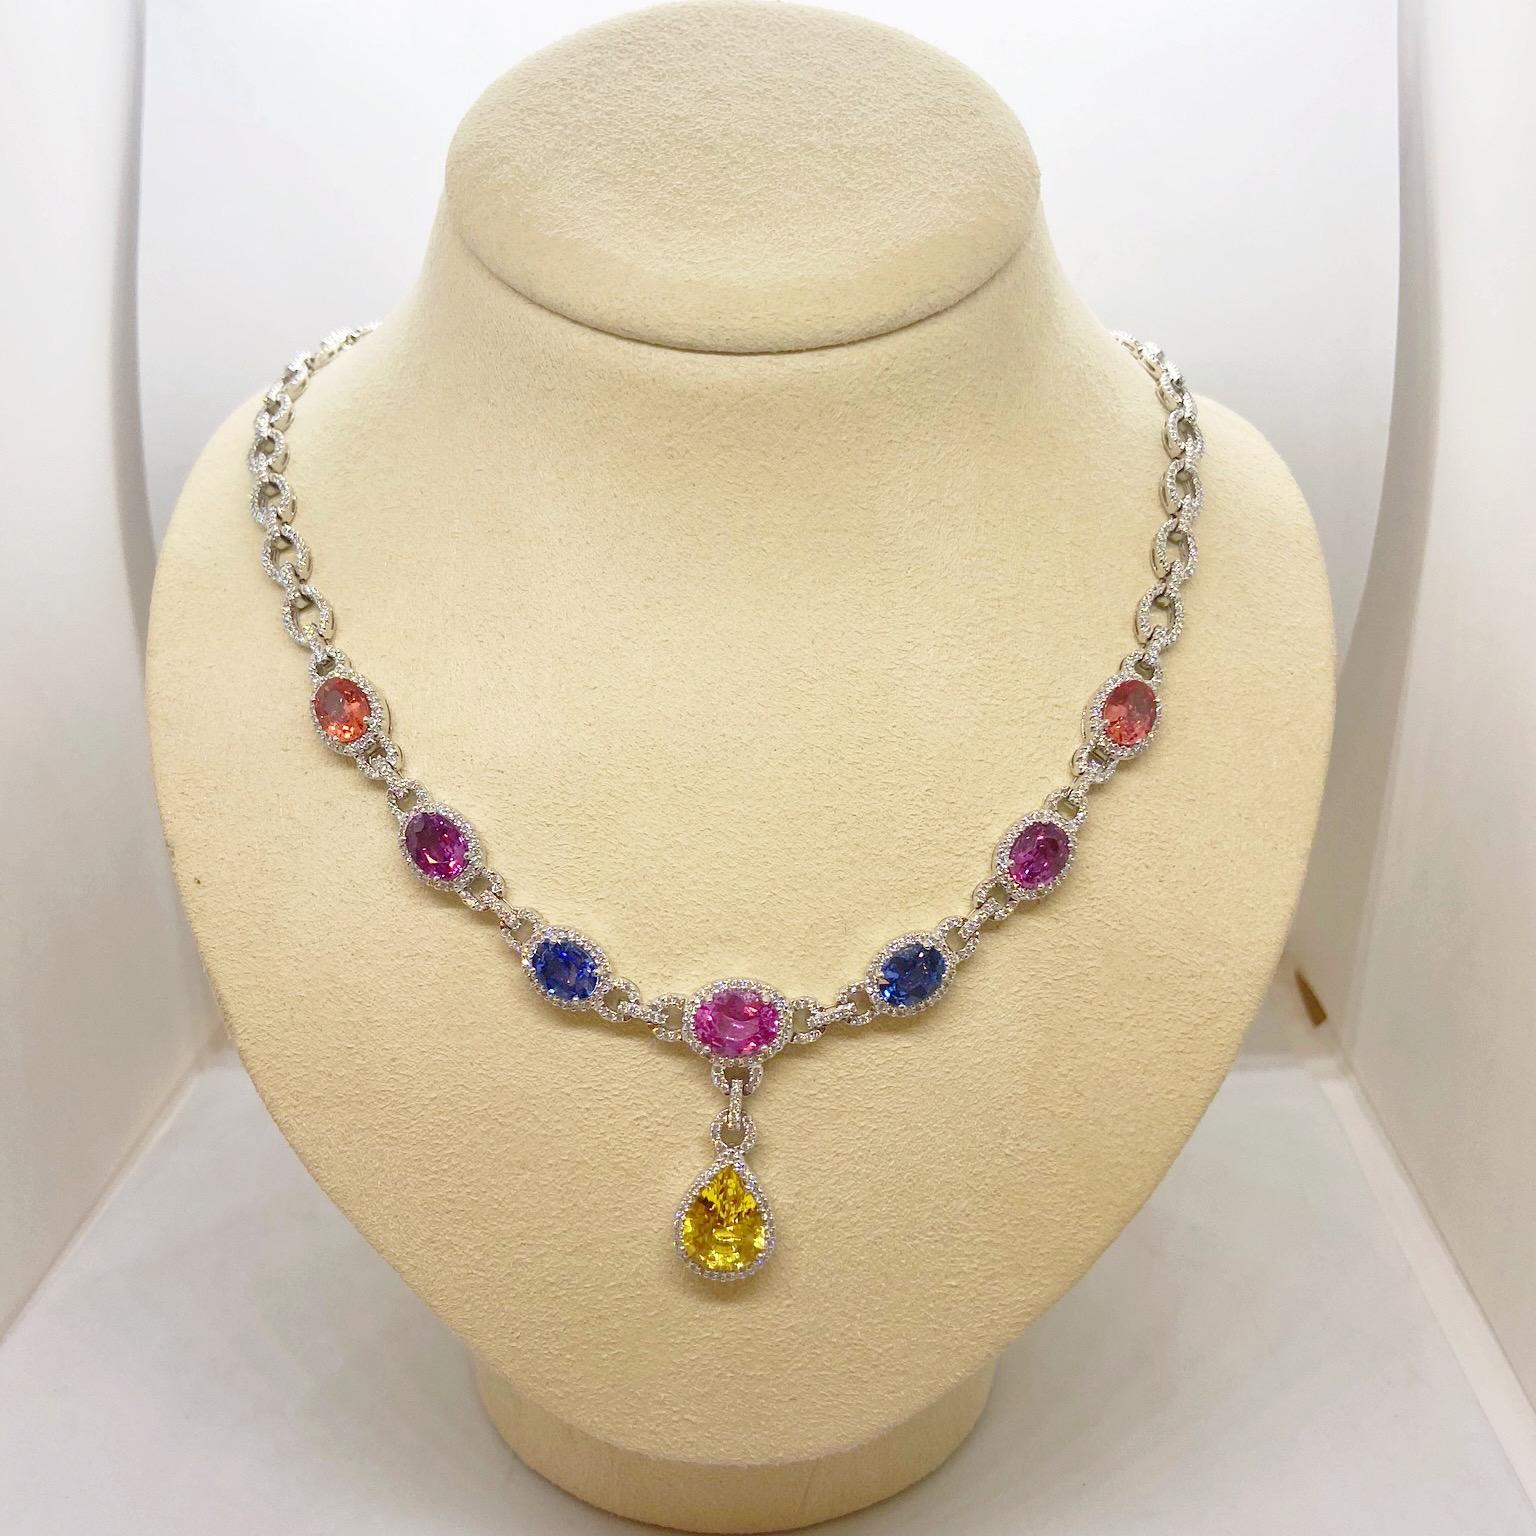 Cellini 18 Karat Gold Diamond & 13.38 Carat Multicolored Sapphire Drop Necklace For Sale 2